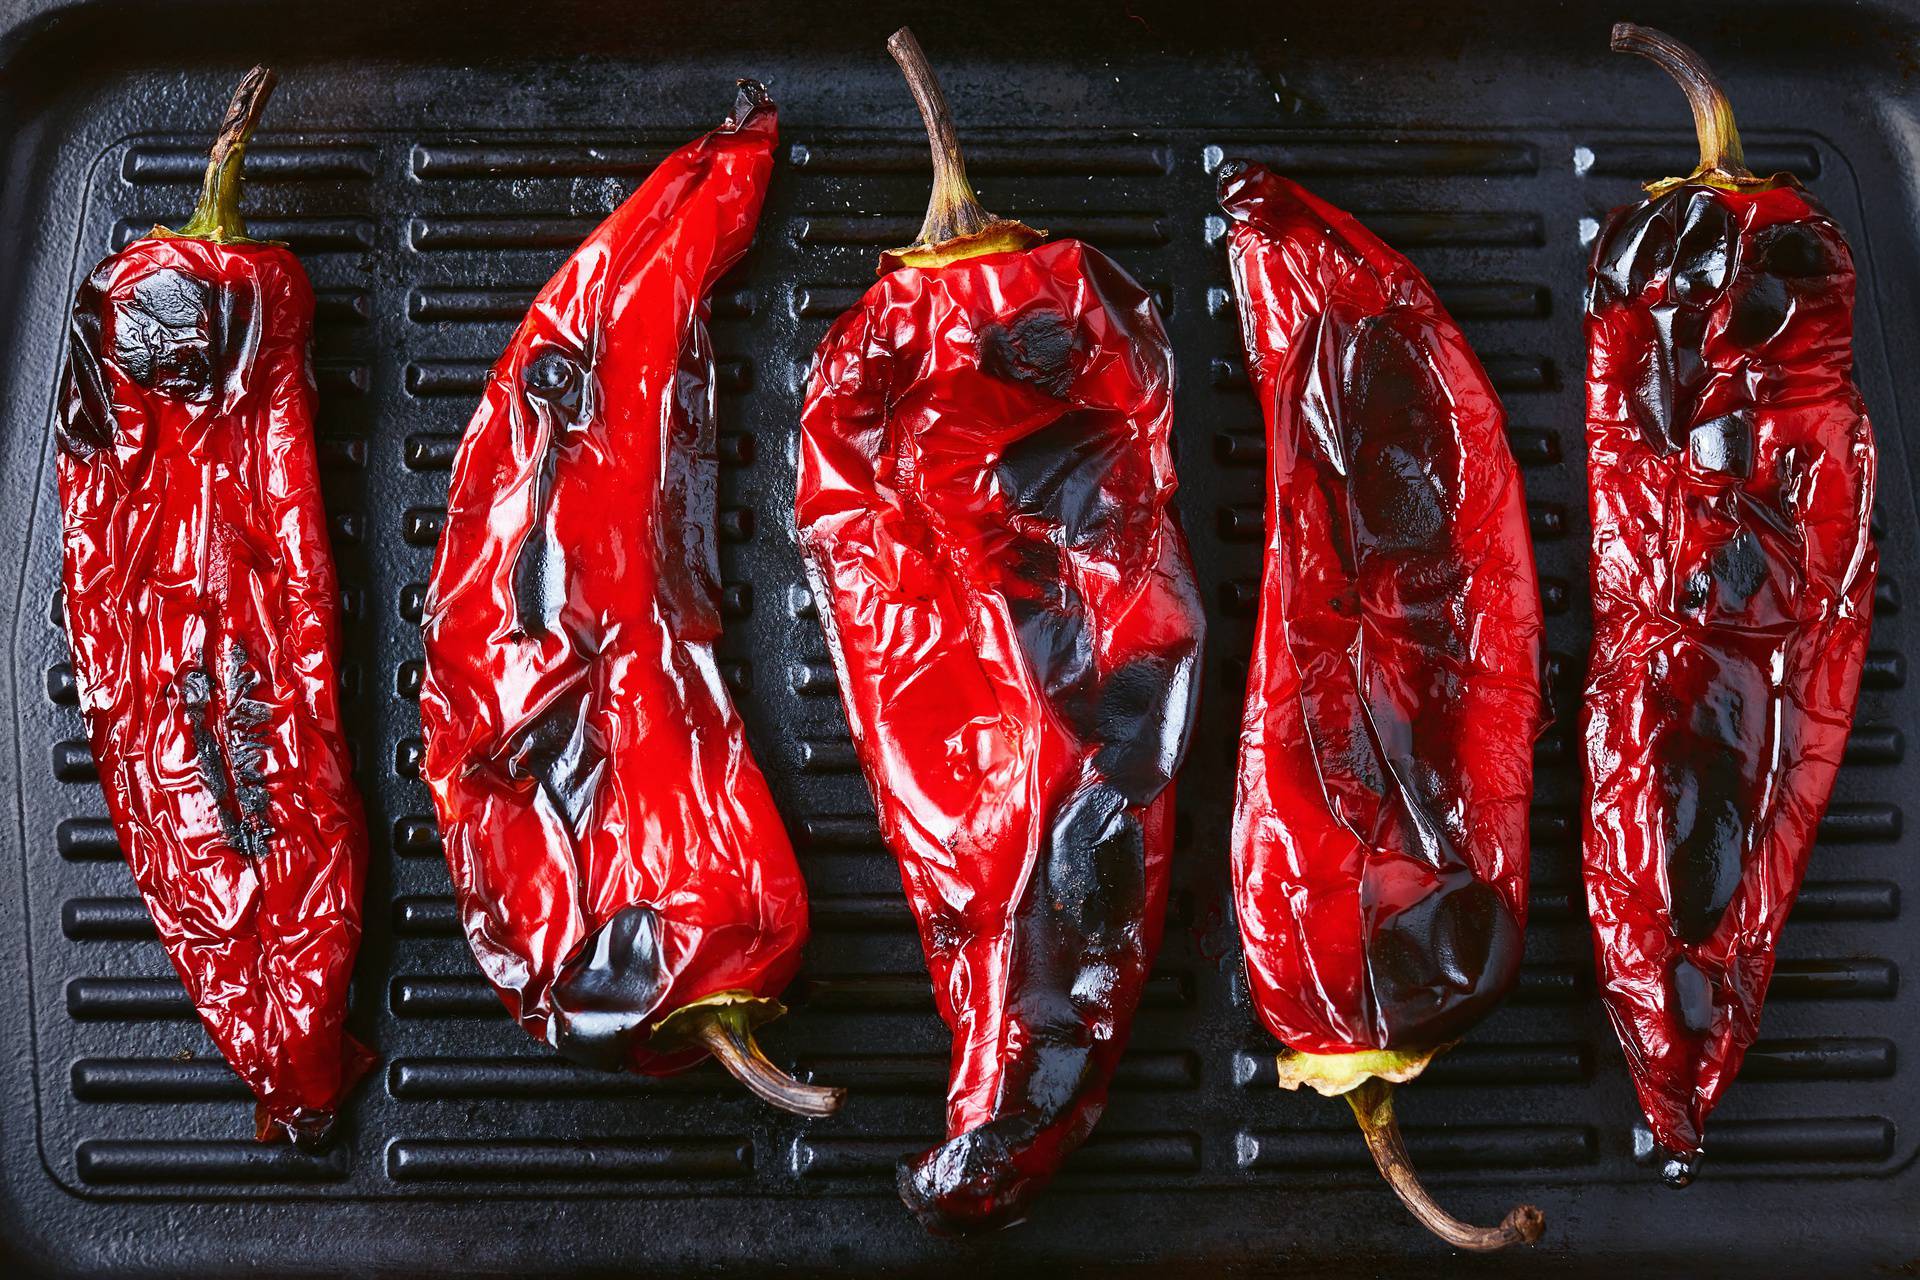 Super trik kako oguliti pečene paprike - kožica spada jako brzo